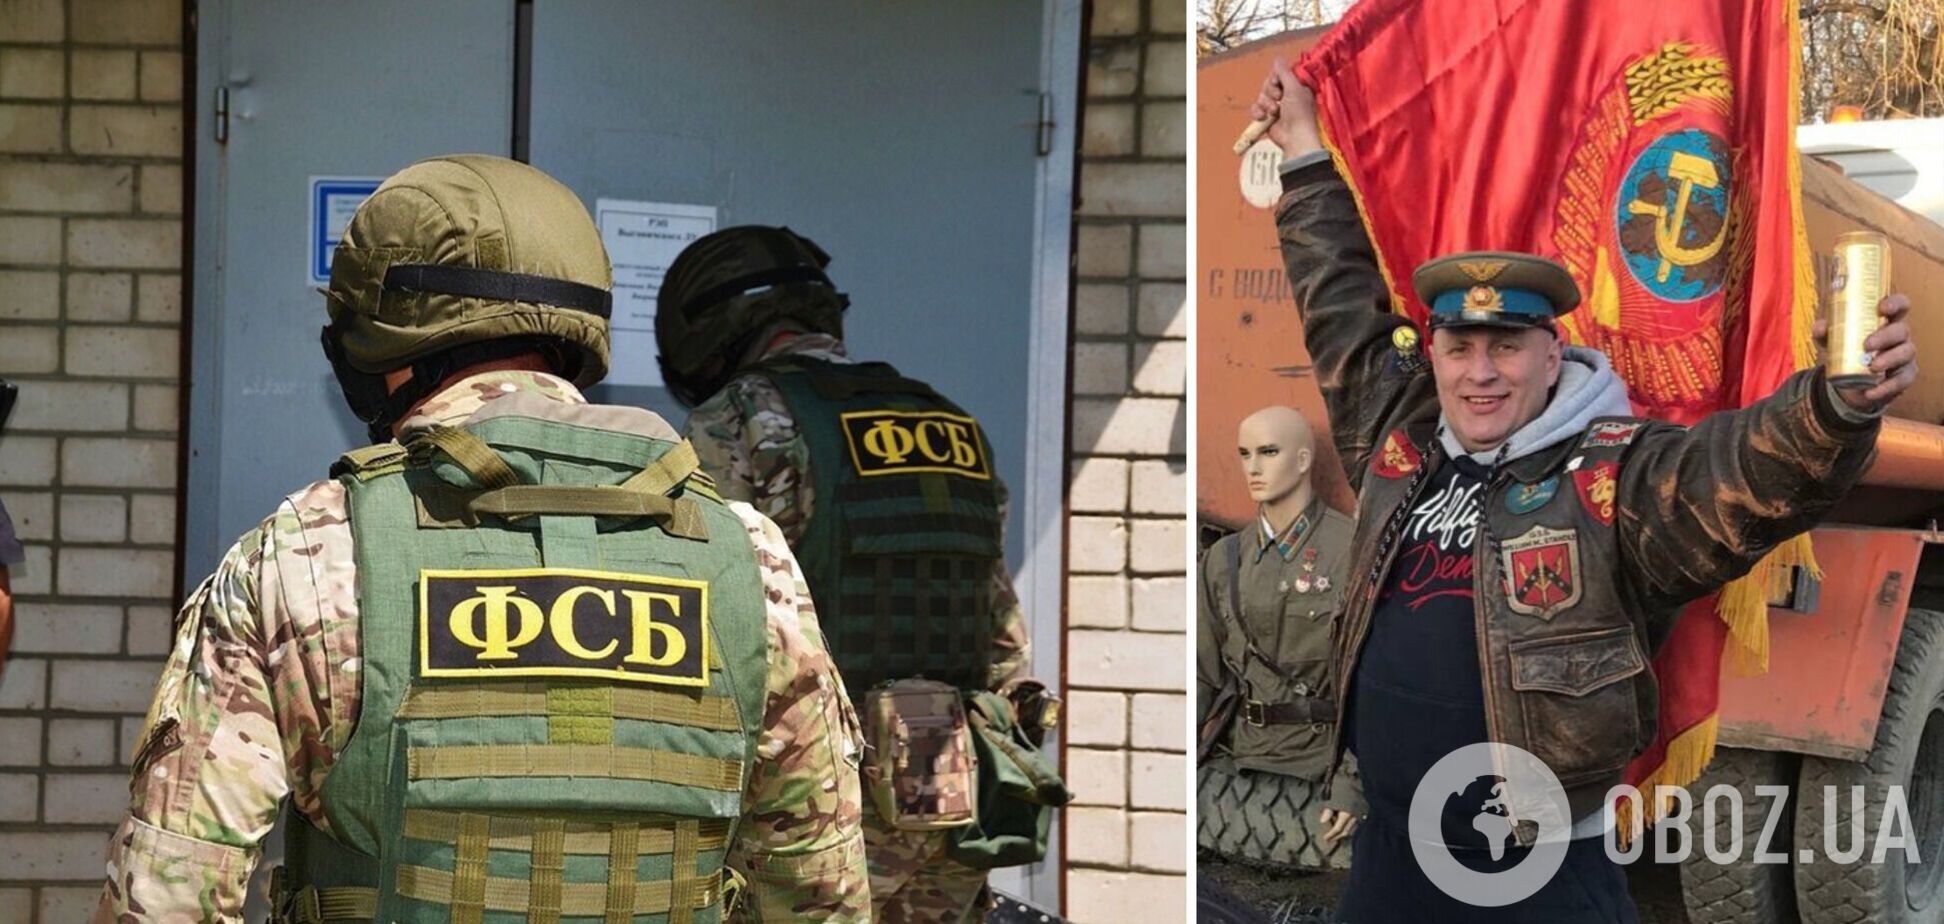 ФСБ в Херсоне 'разоблачила' 'украинского нациста', оказавшегося россиянином и сторонником войны против Украины. Видео